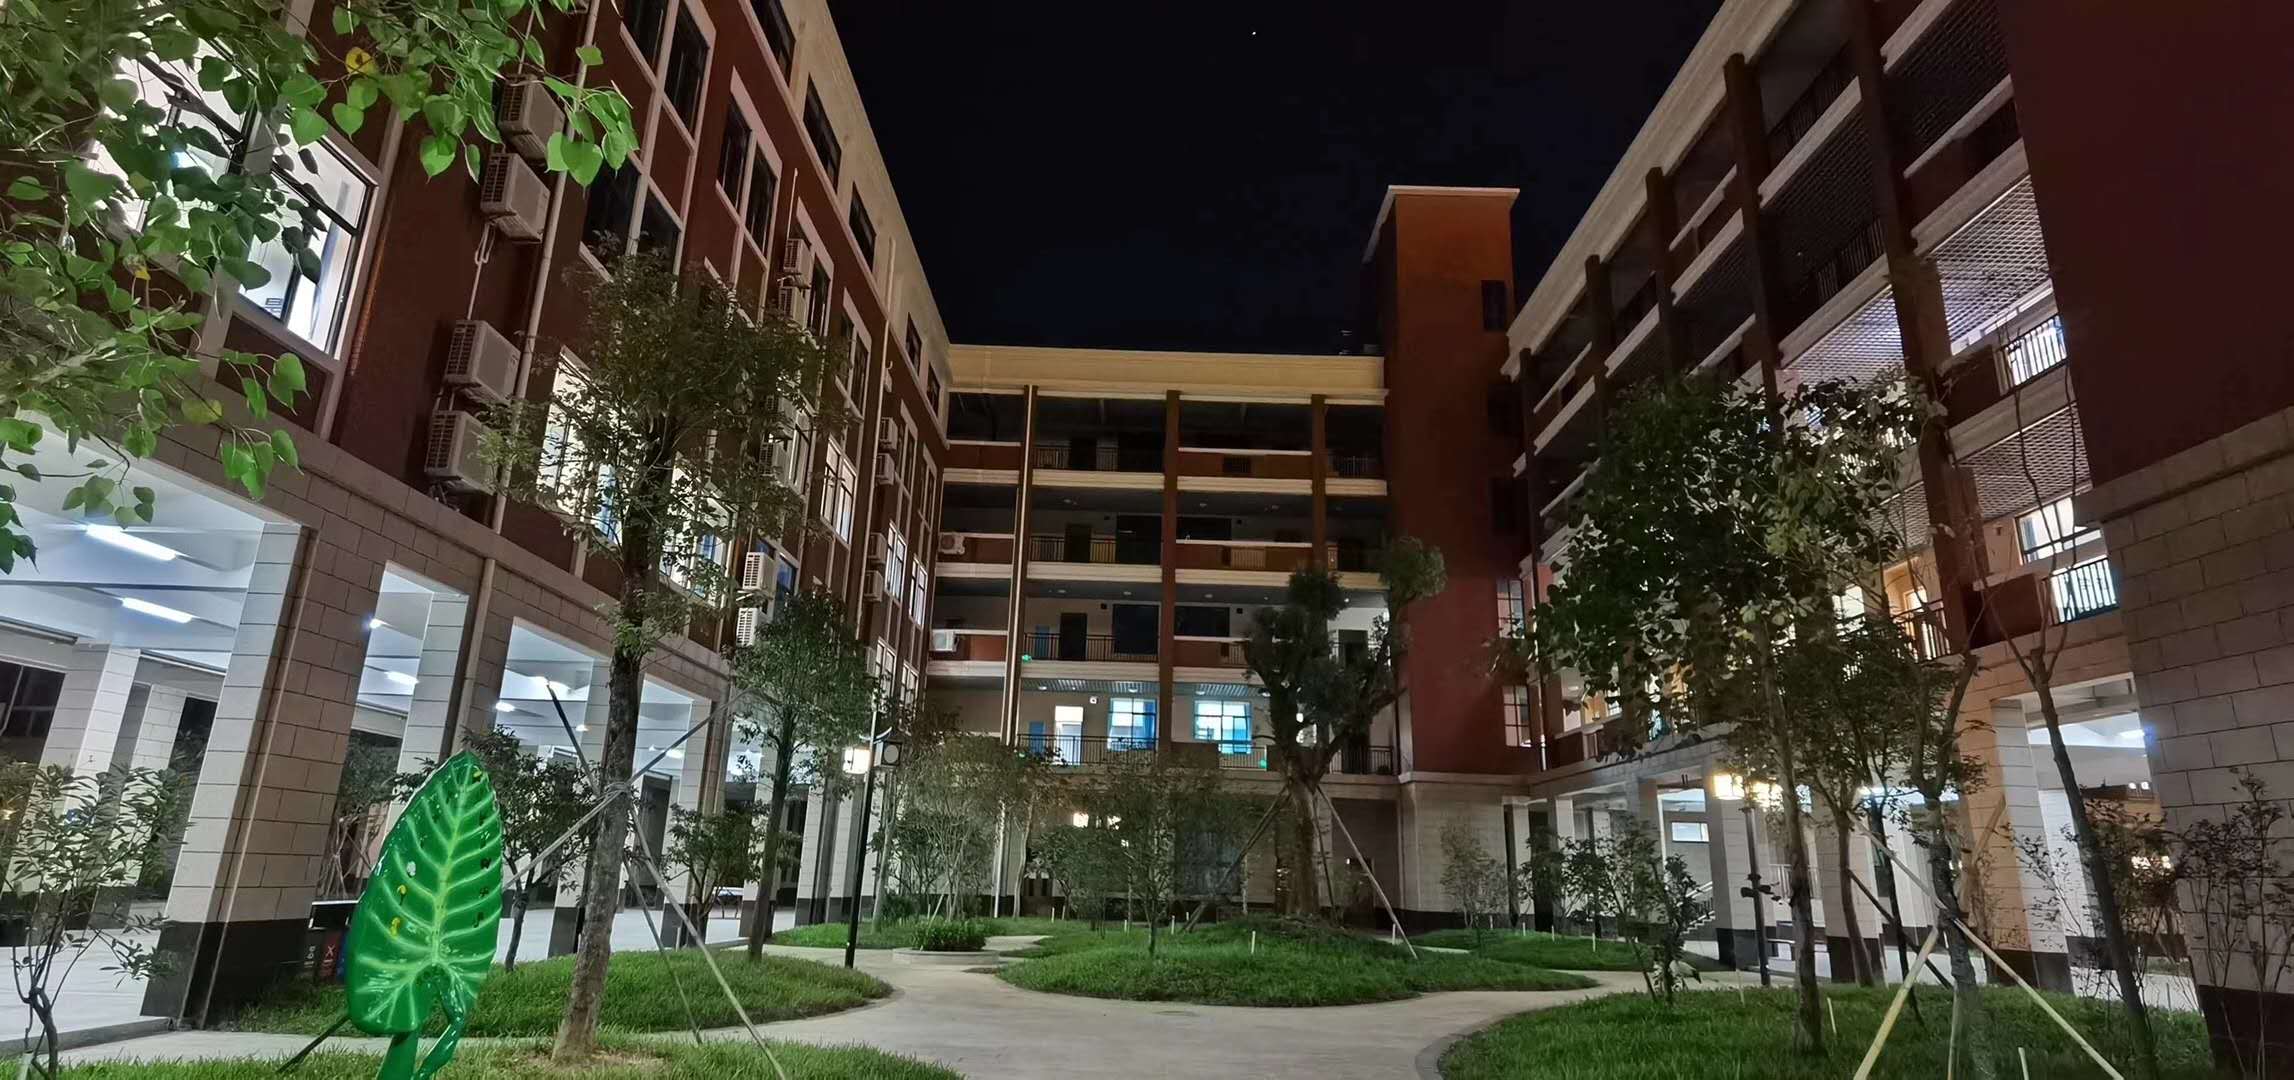 校园夜景.jpg